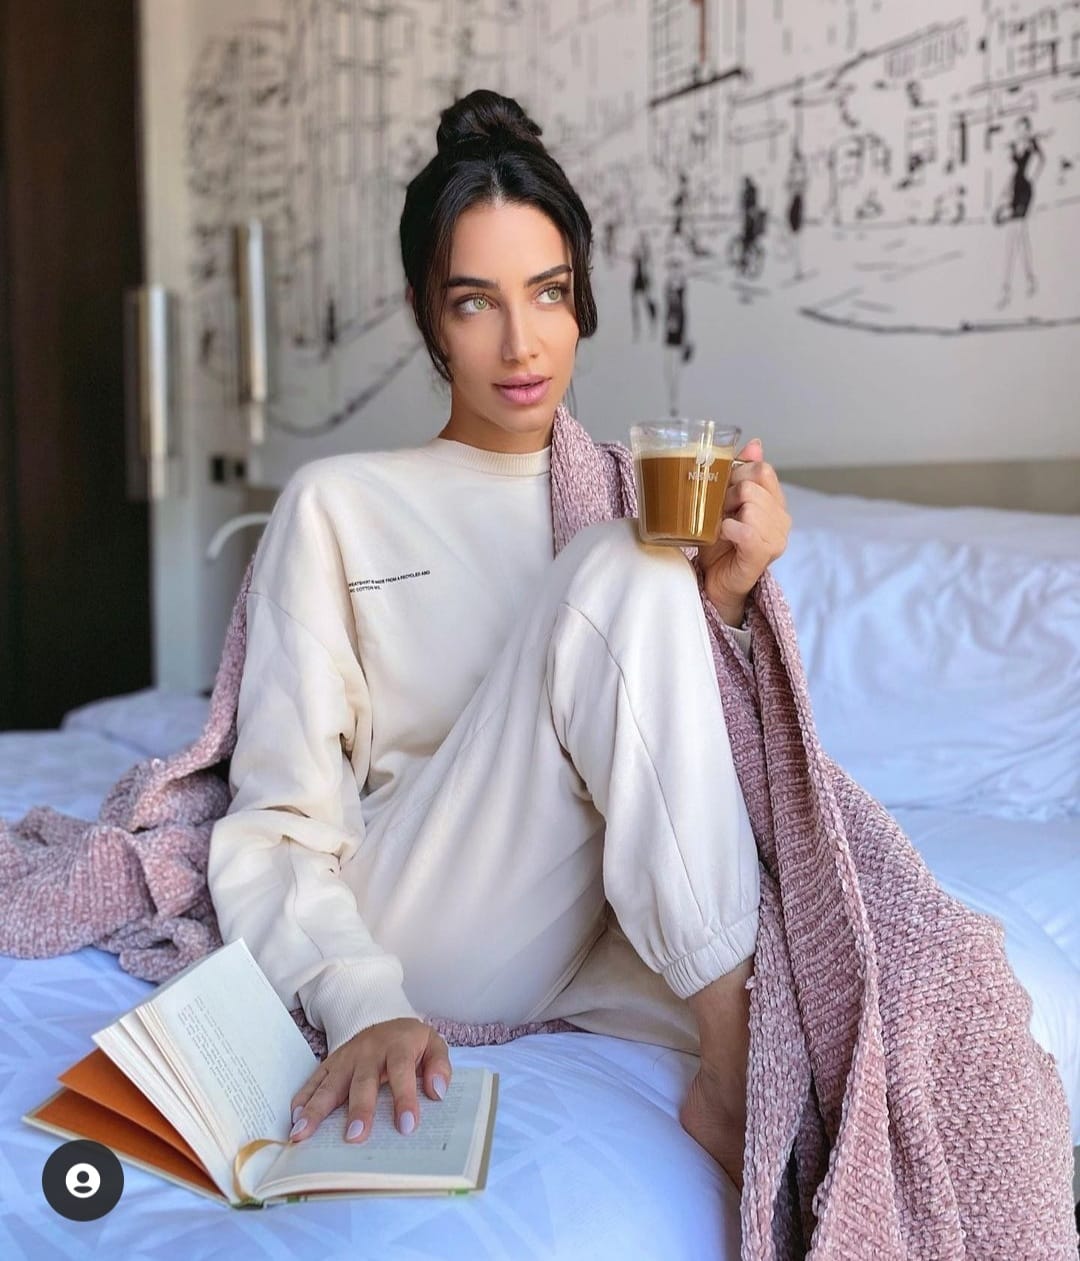 جيسيكا قهواتي في زي رياضي بلون الفوشيا صورة من انستغرامها الخاص @jessicakahawaty